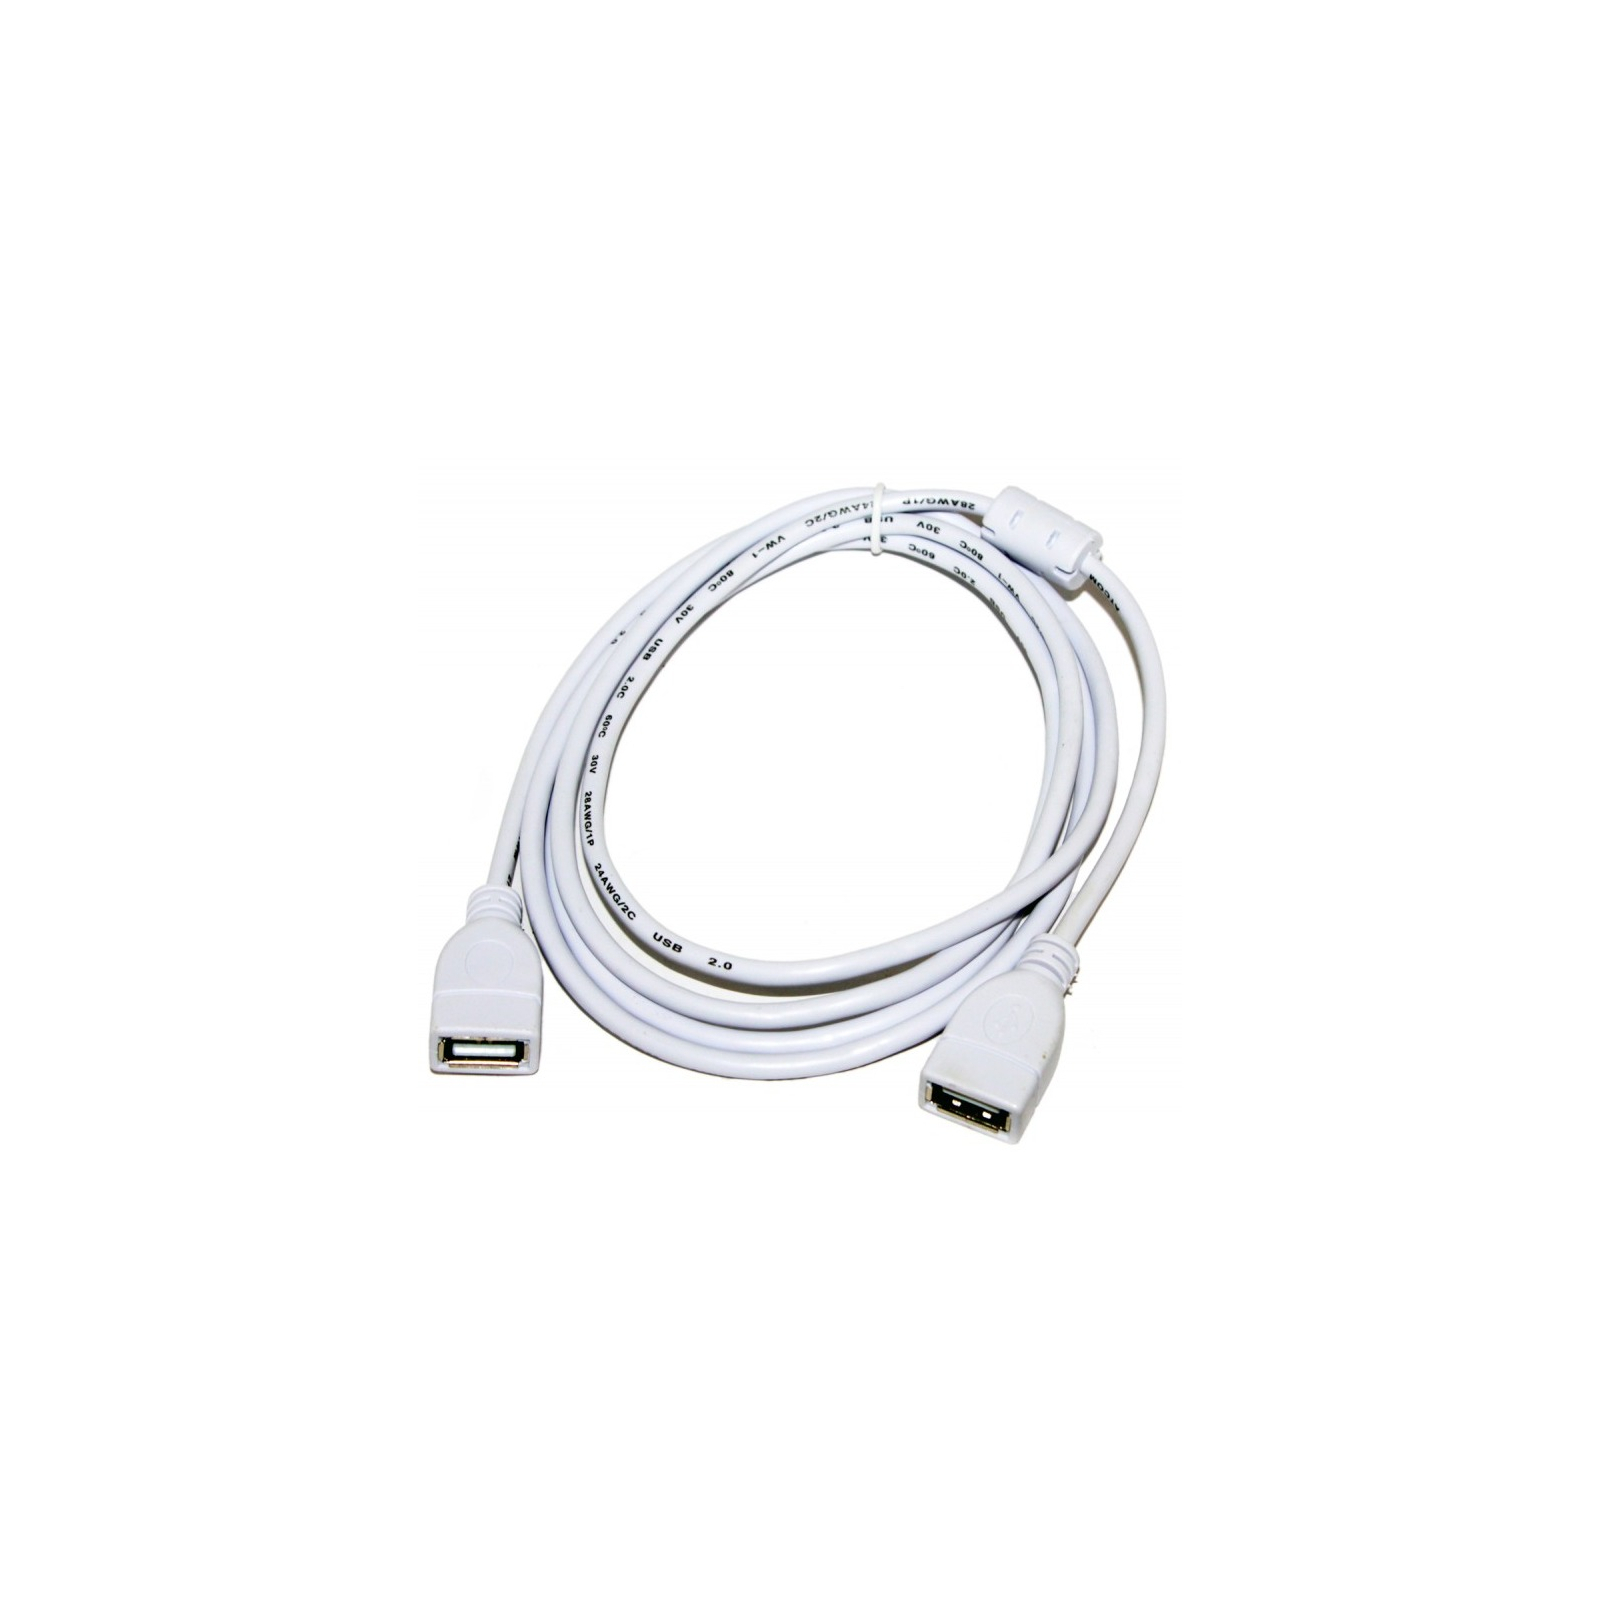 Дата кабель USB 2.0 AF/AF 1.8m Atcom (15647) зображення 2